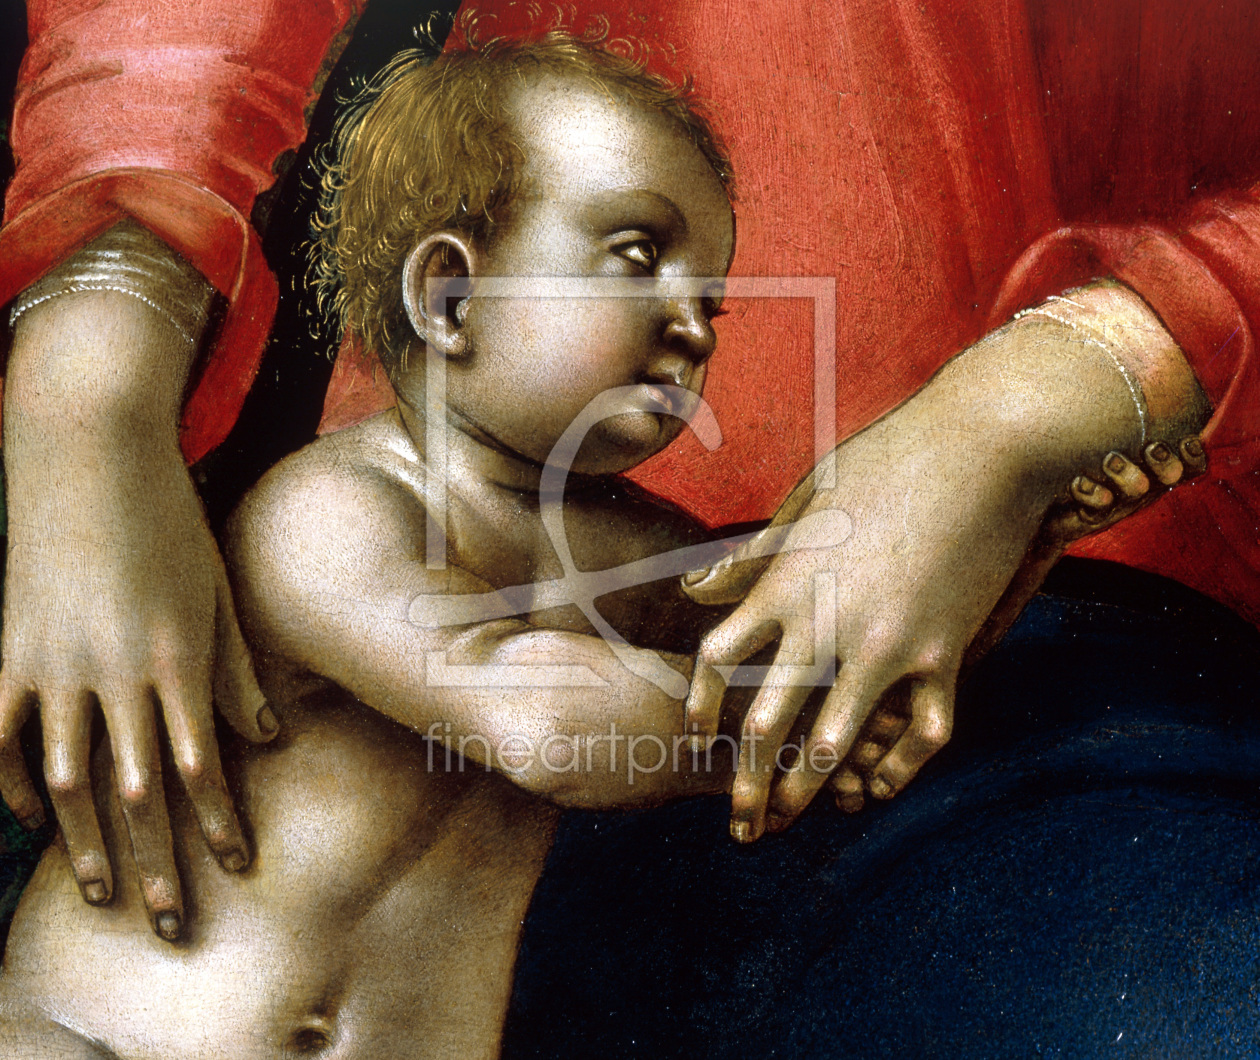 Bild-Nr.: 30002528 L.Signorelli, Mary with Child, sect. erstellt von Signorelli, Luca